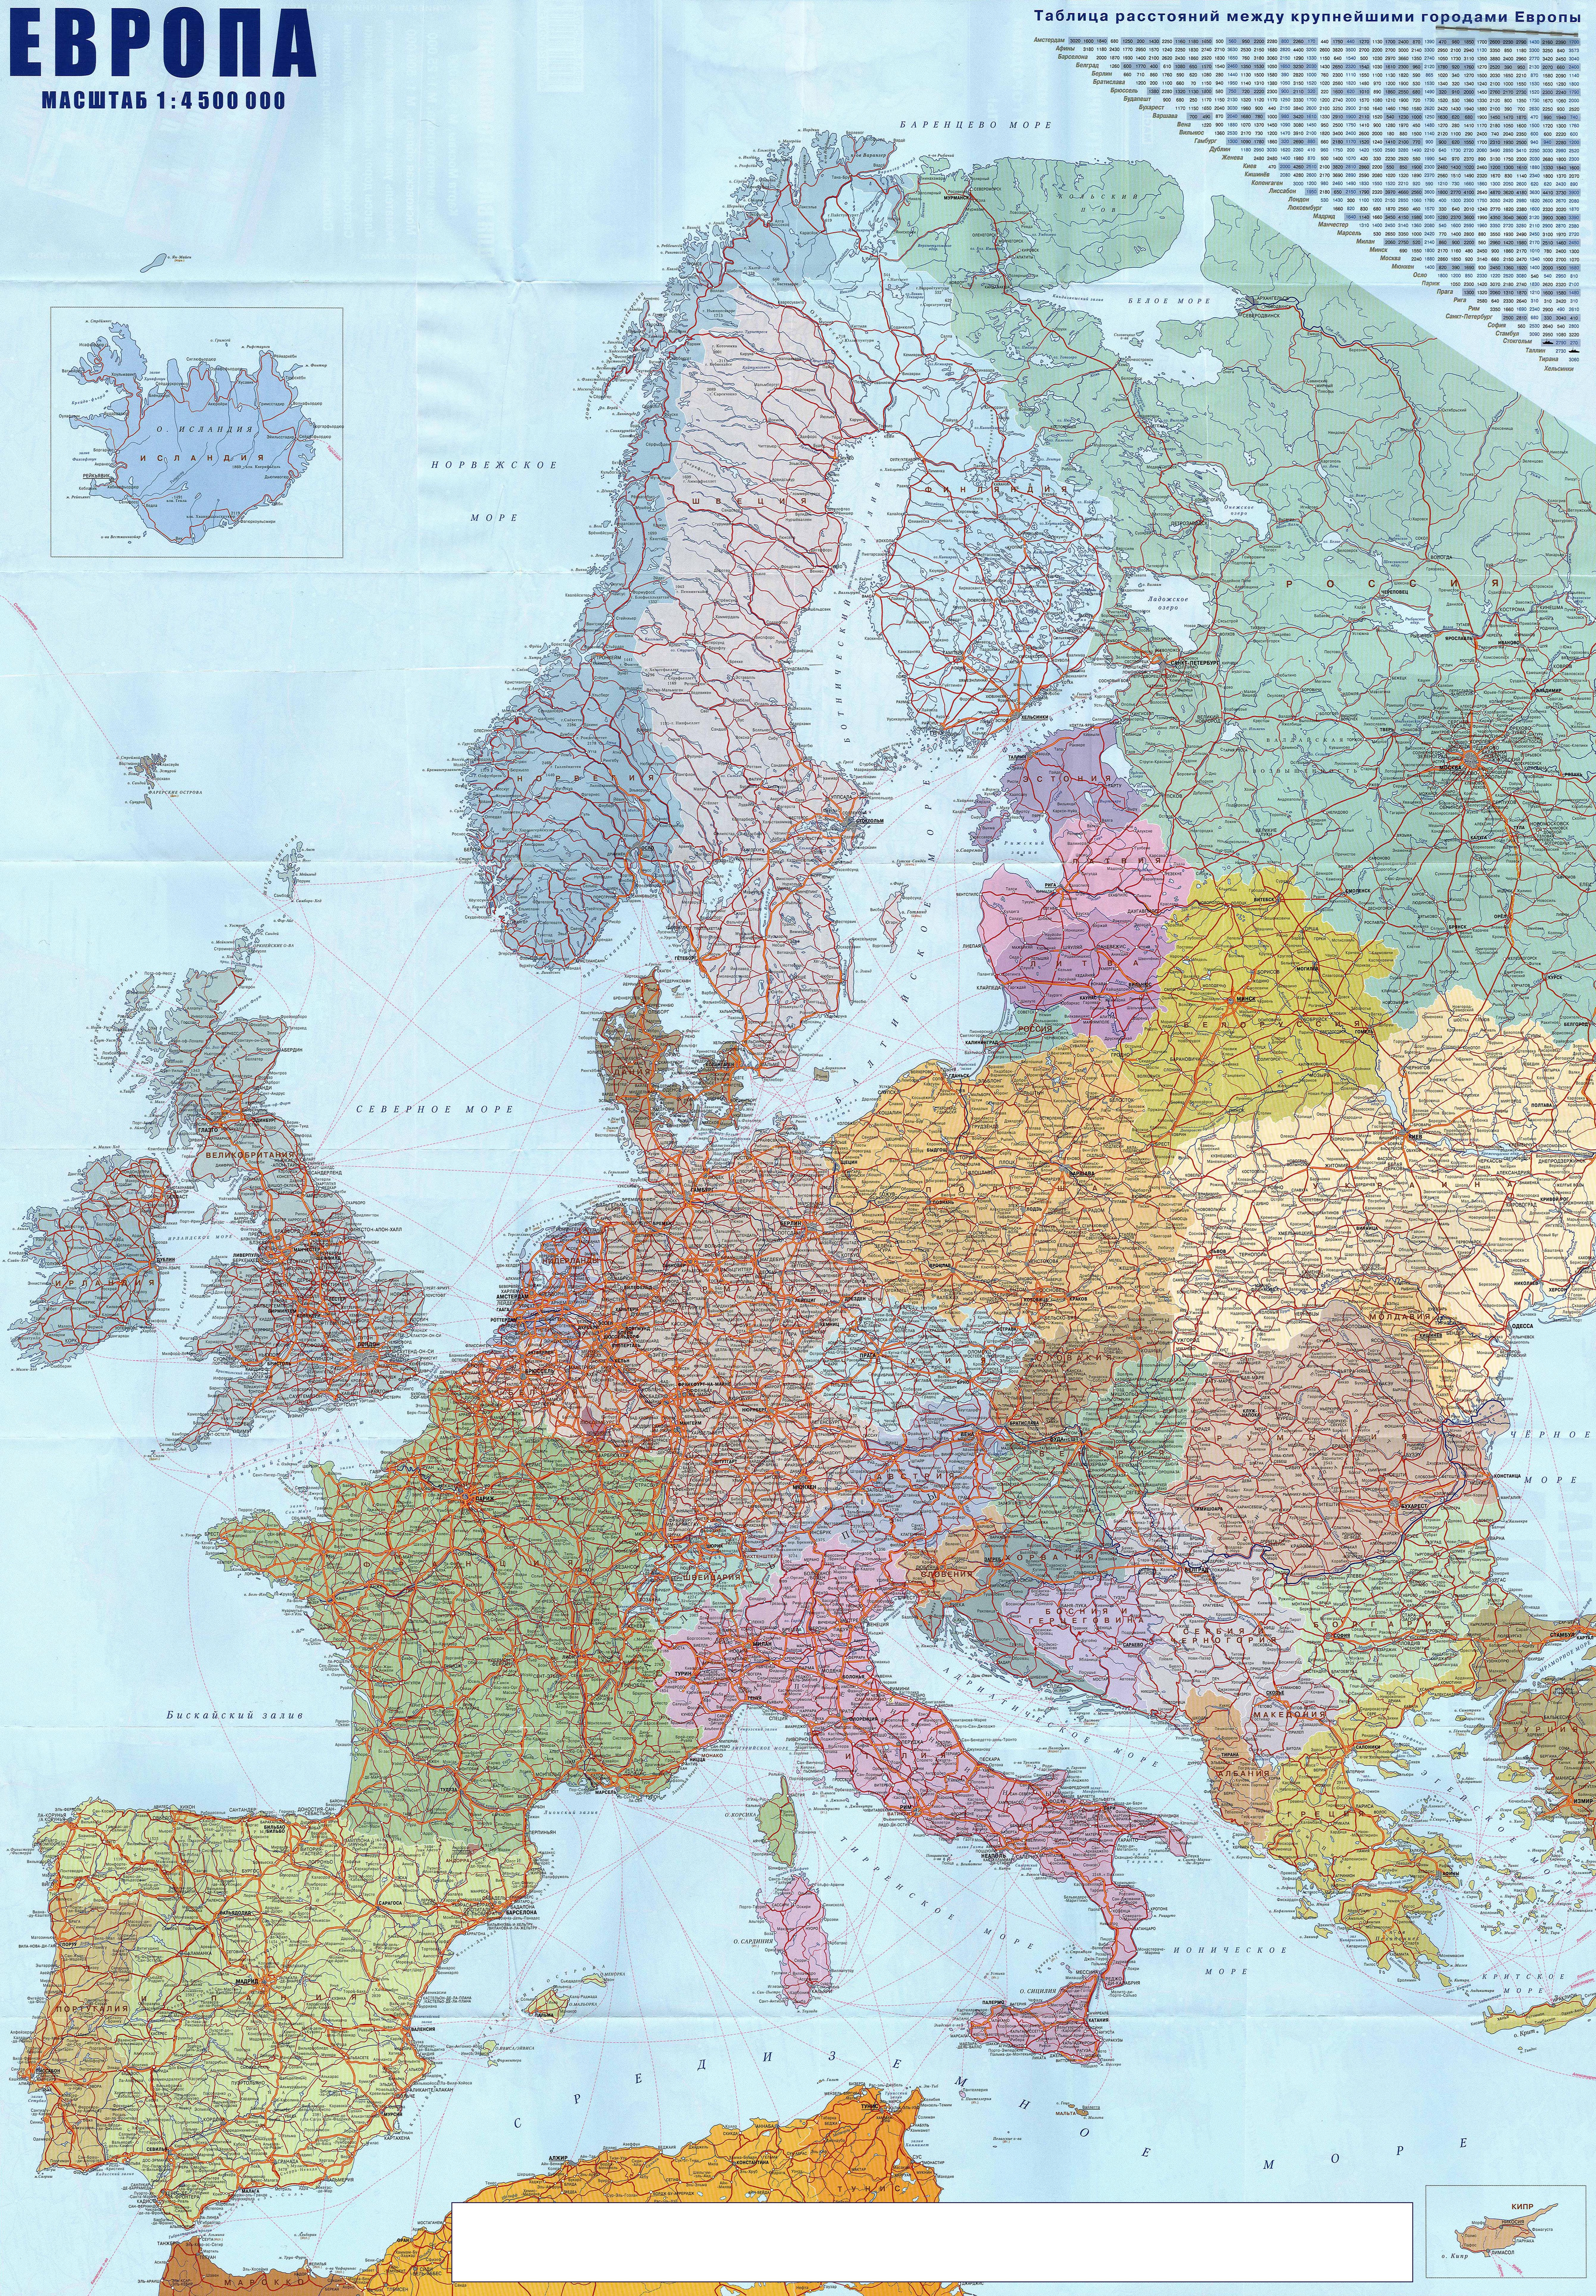 Большая подробная политическая карта Европы на русском языке. Все страны игорода Европы на политической карте. Все автодороги Европы на карте